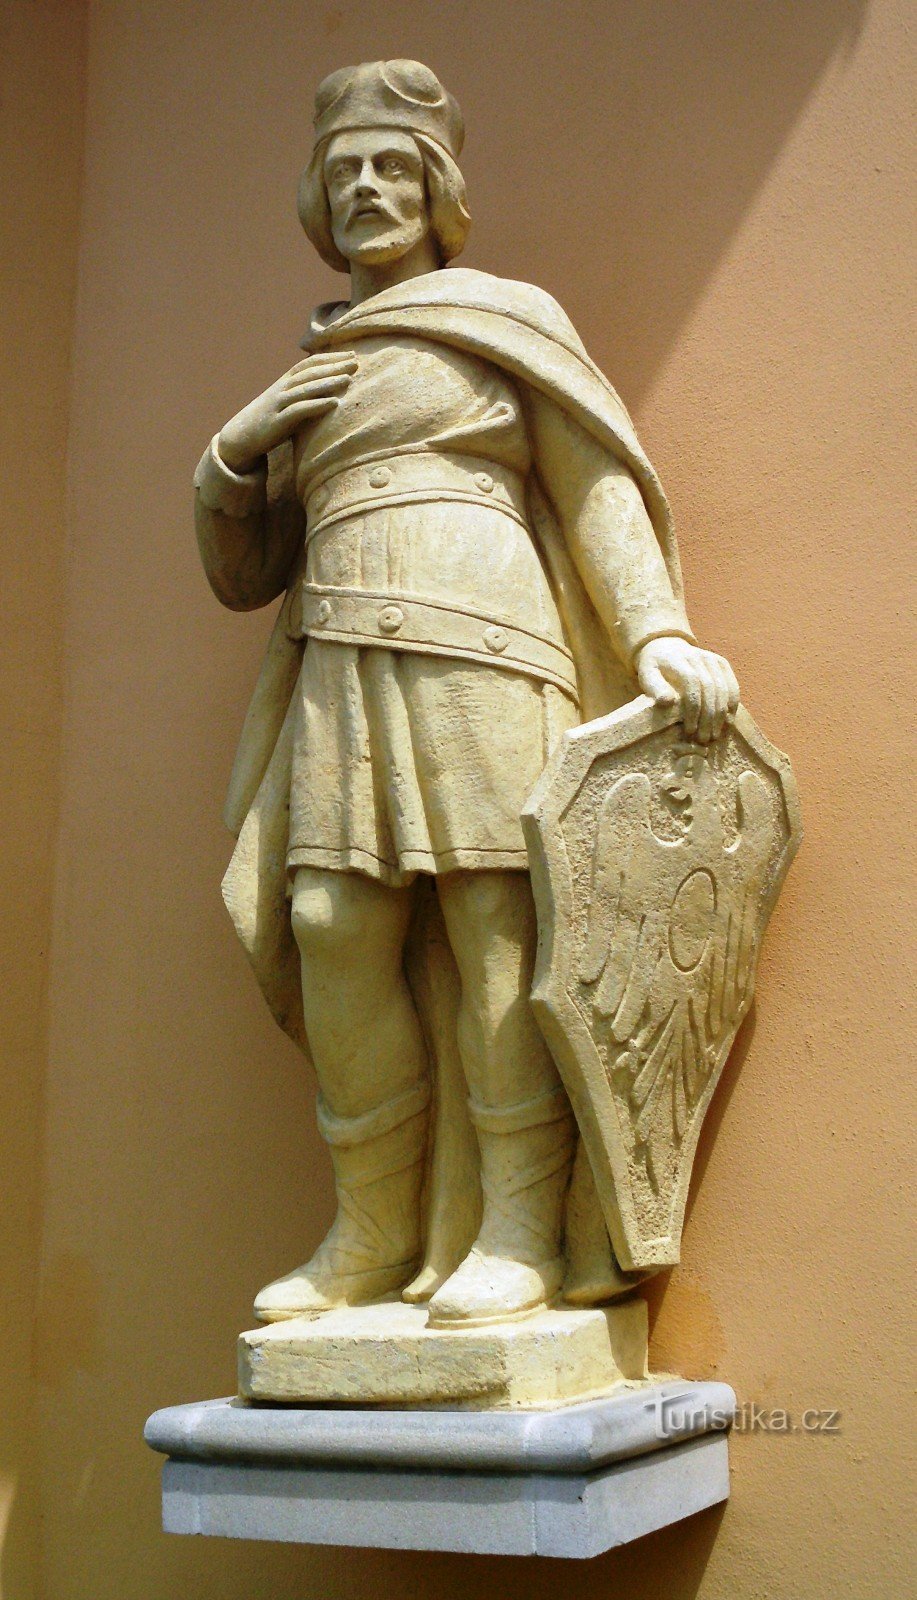 staty av St. Wenceslas bredvid ingången